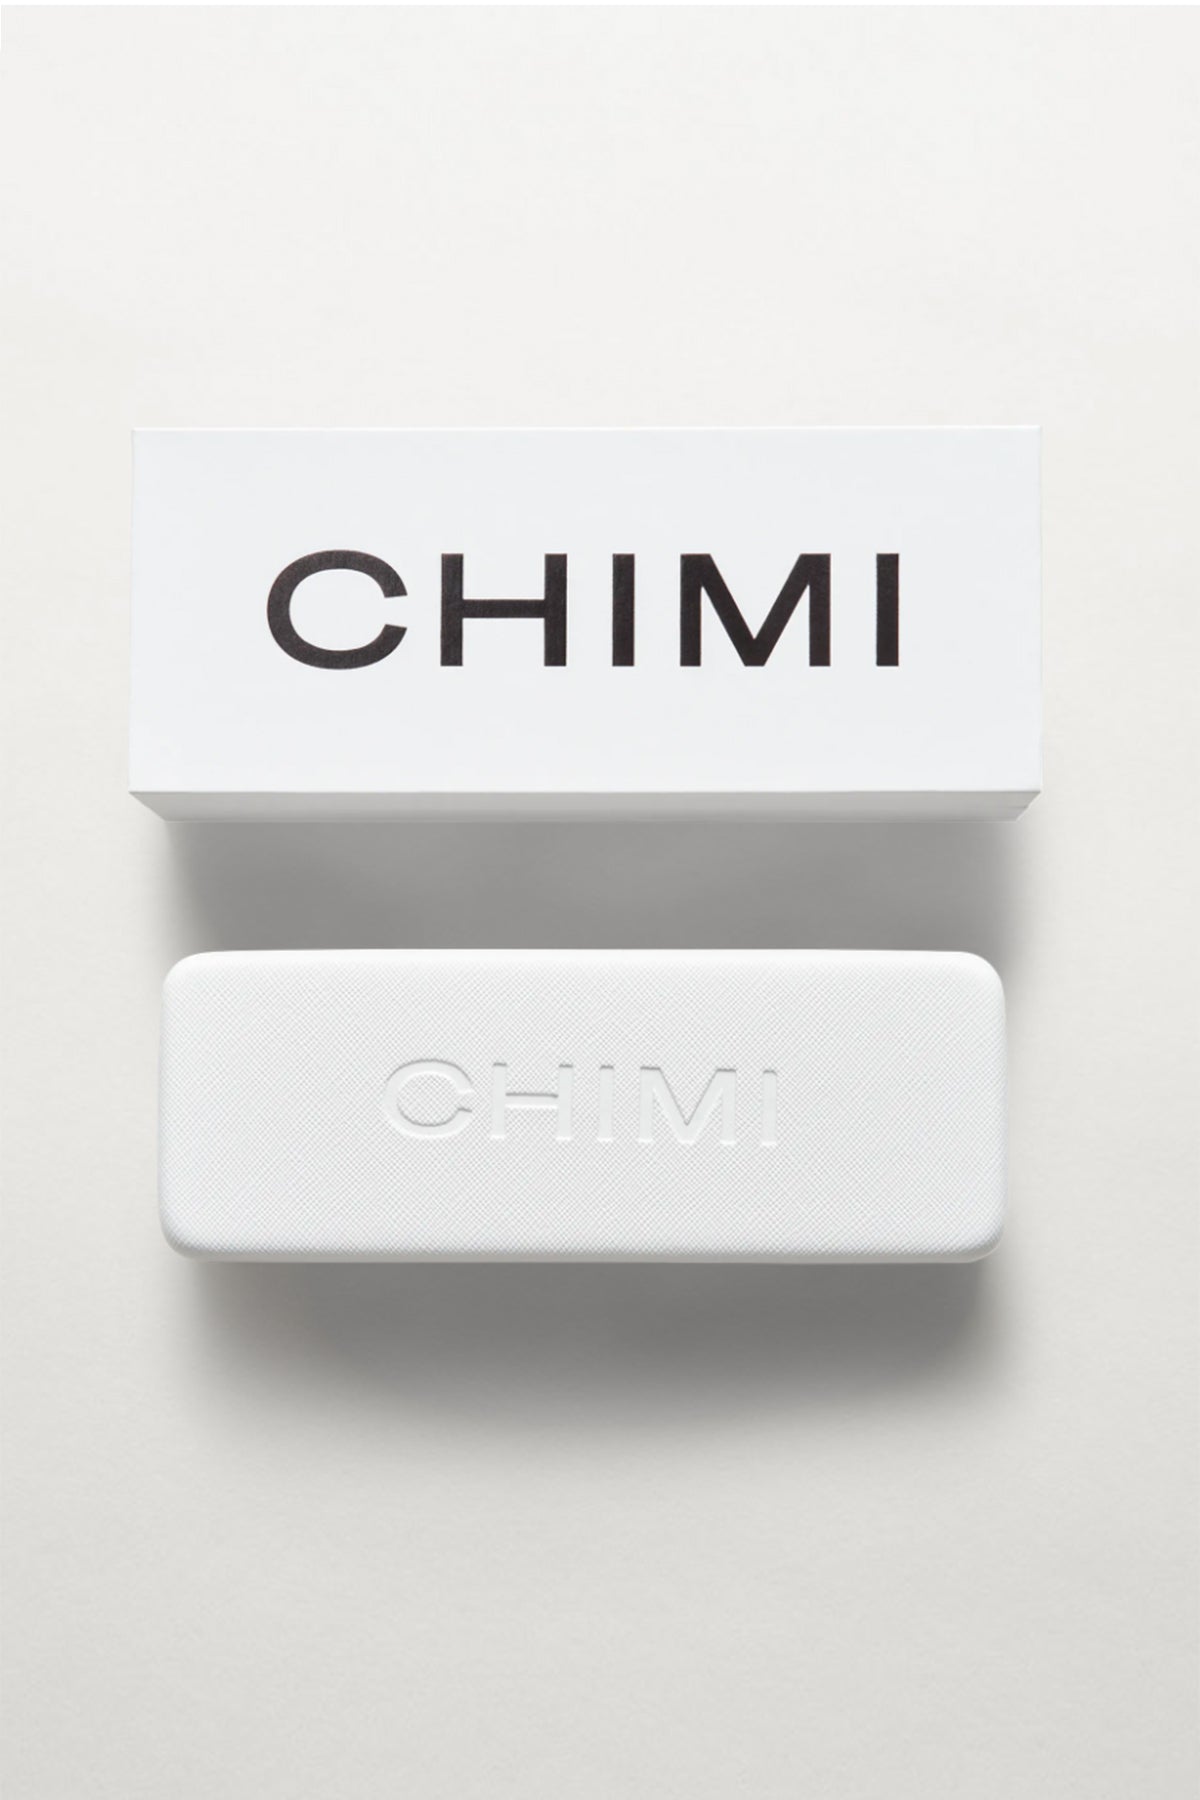 Chimi Sunglasses Case and Box-22133022884033